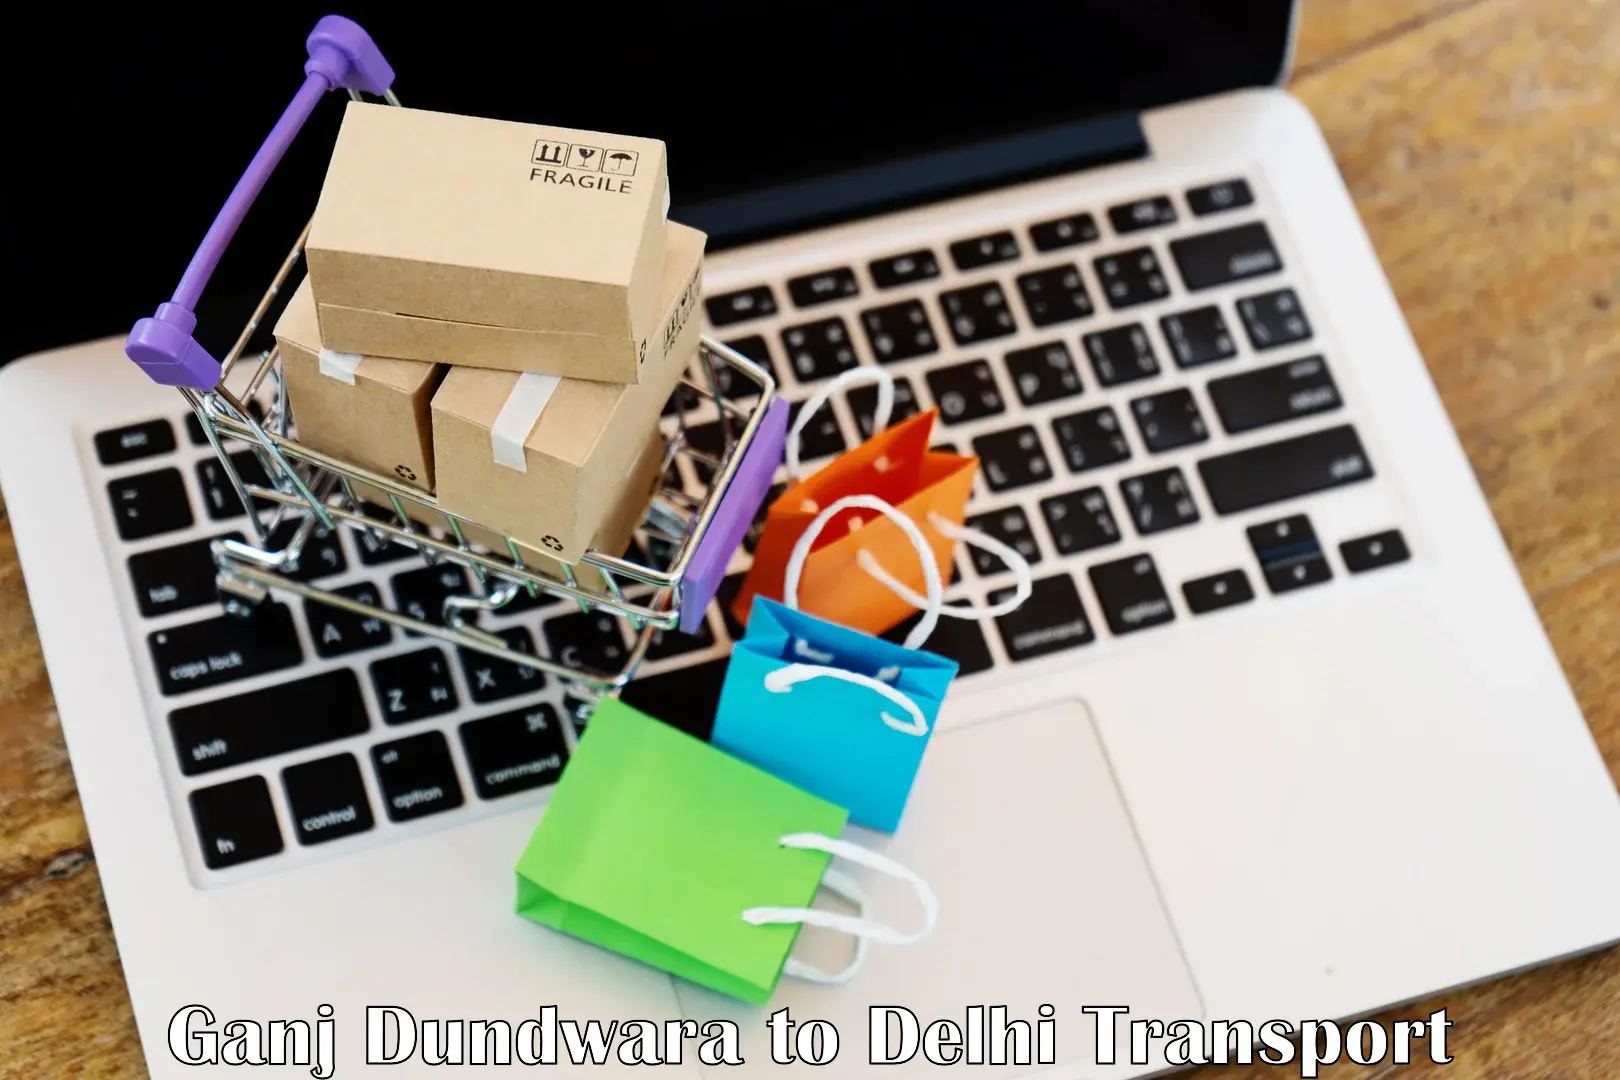 Road transport online services in Ganj Dundwara to Delhi Technological University DTU